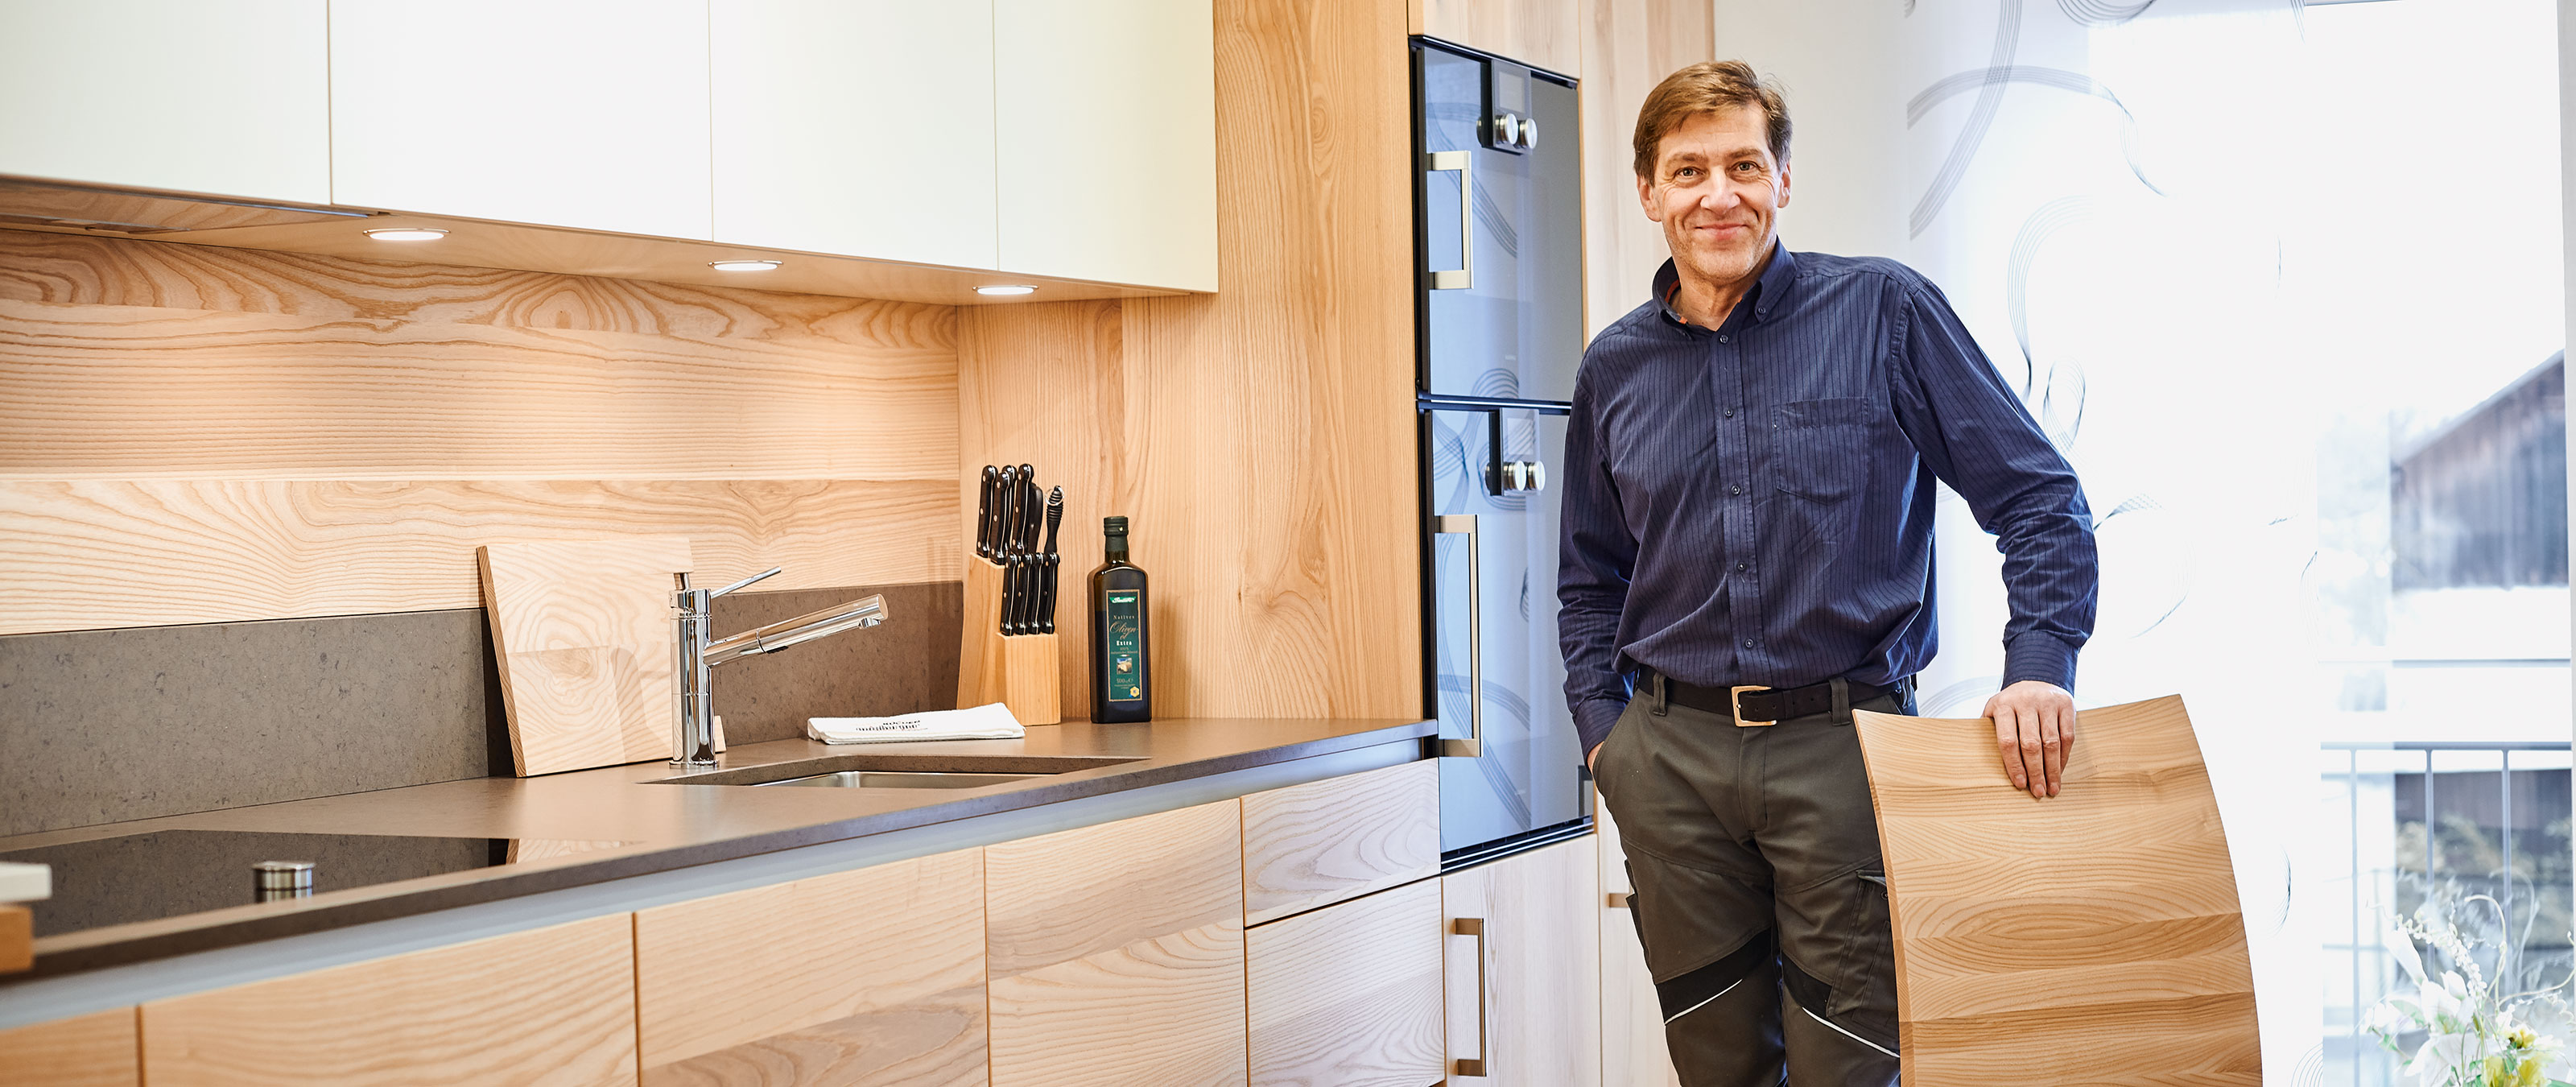 Maßgeschneiderte Küchen: Schreinermeister Martin Geisberger legt höchsten Wert auf Qualität